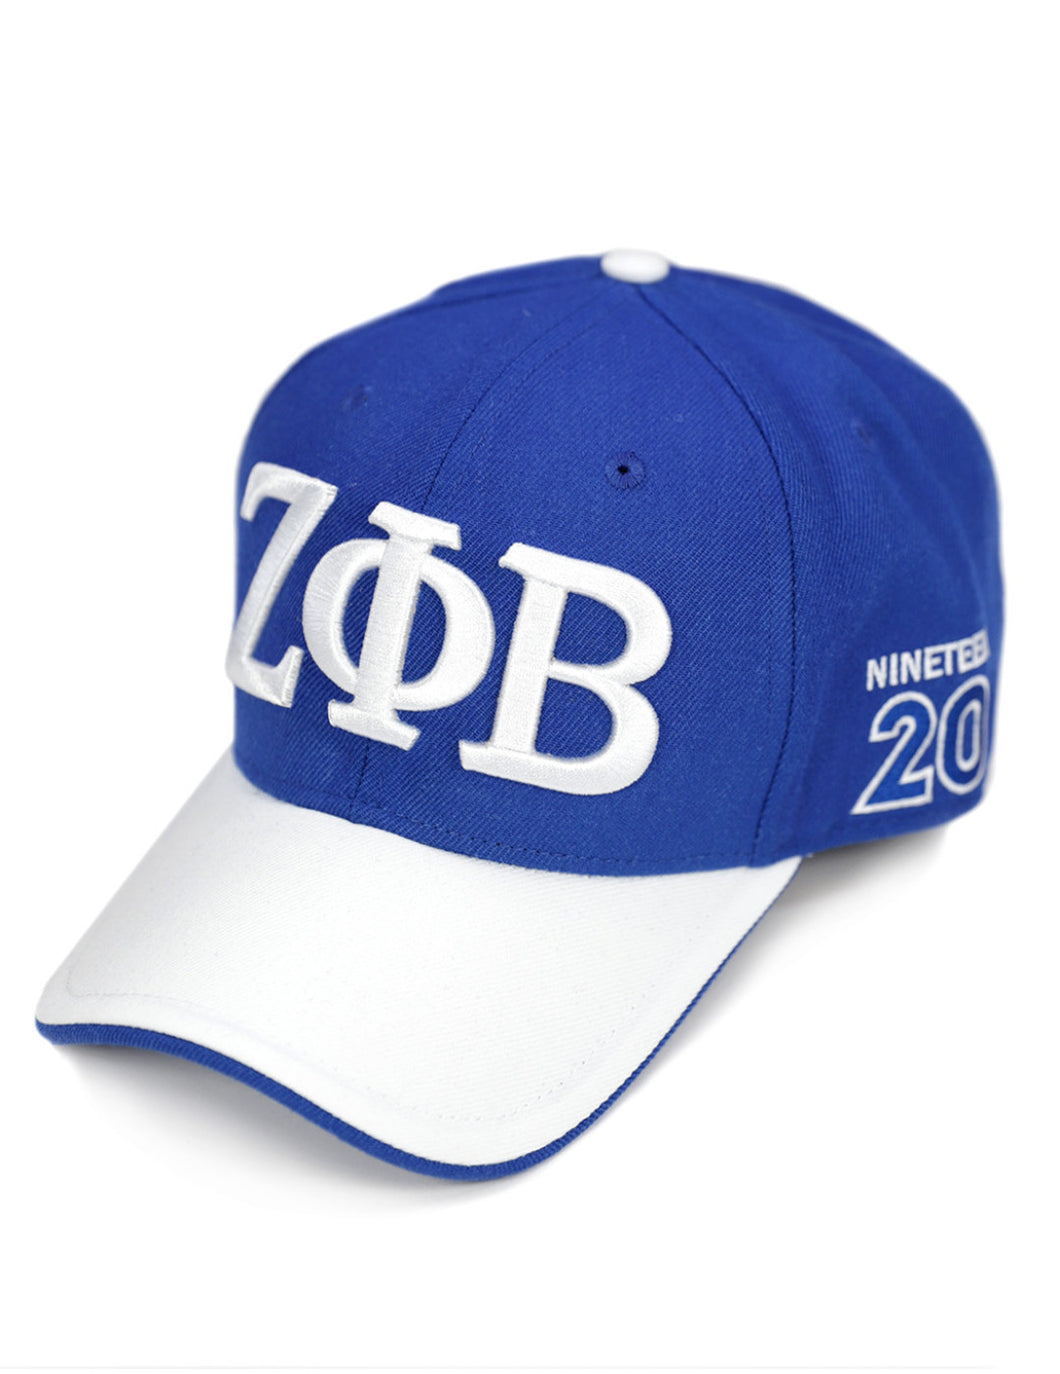 ZPB CAP_ROYAL BLUE